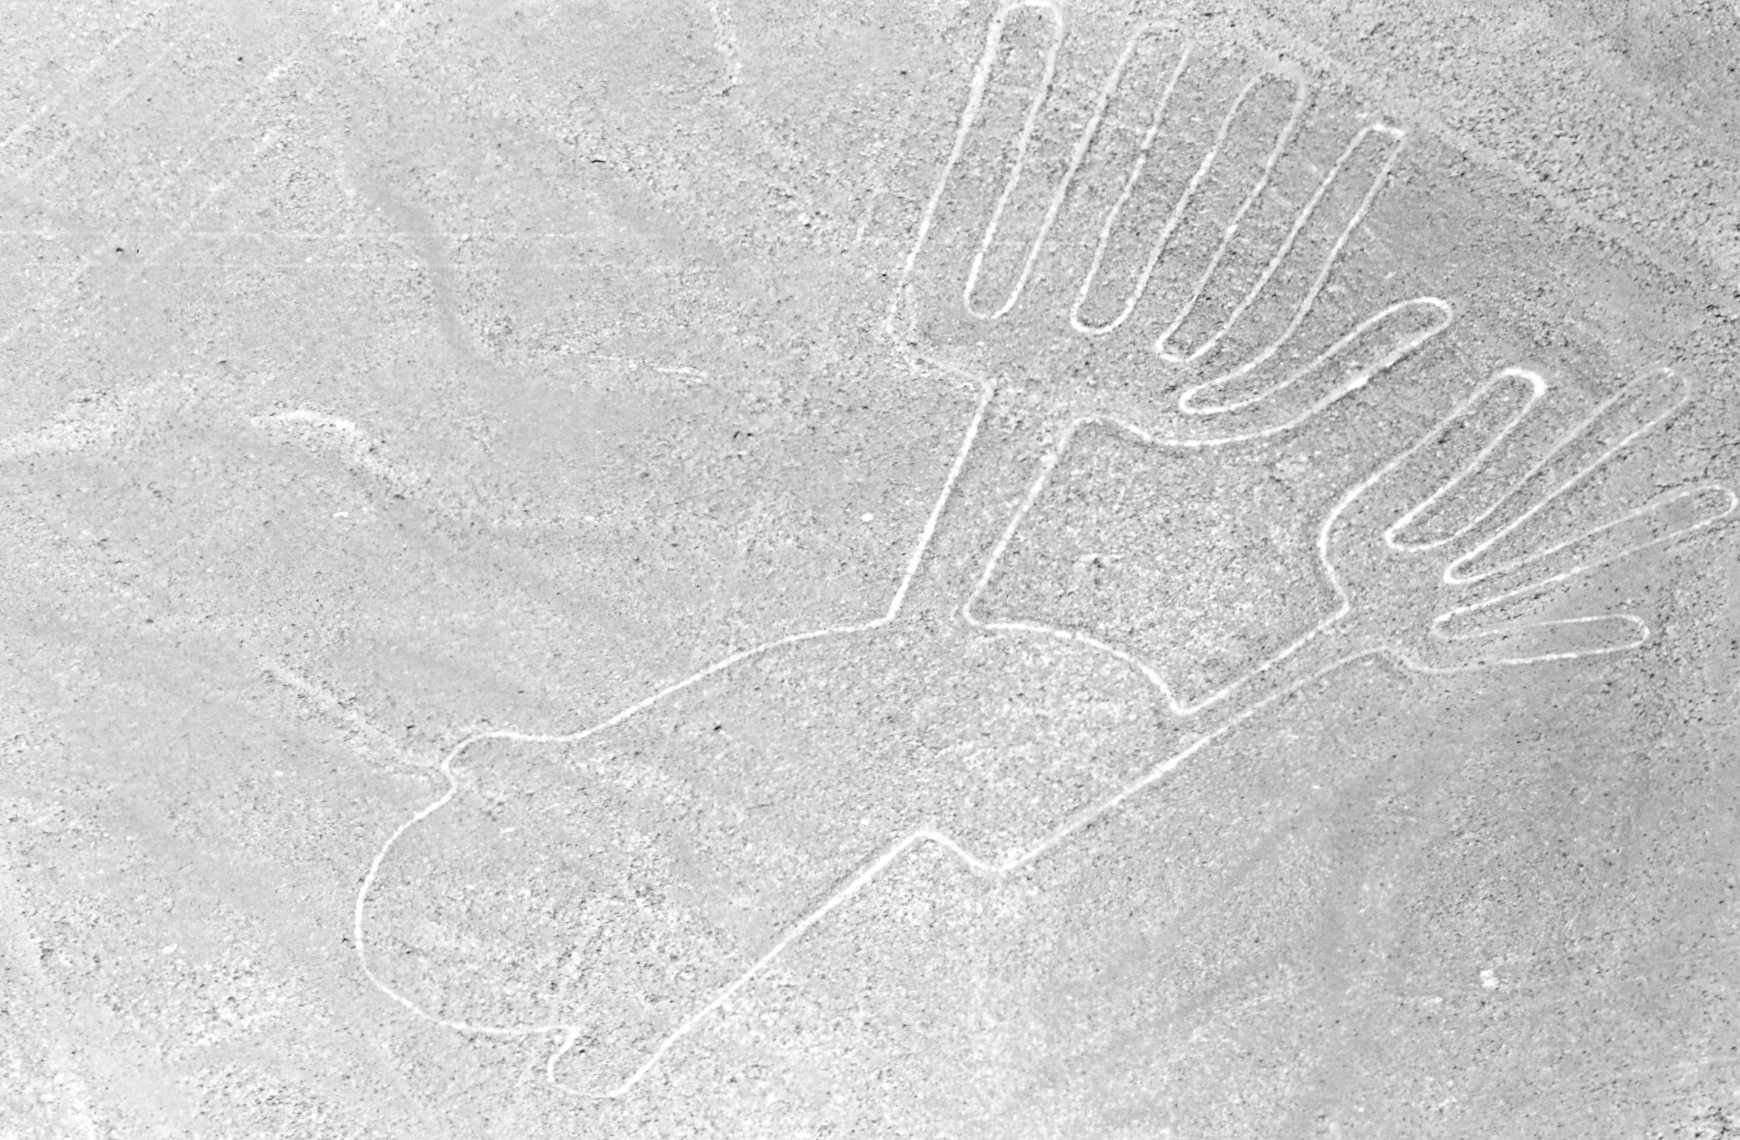 Nazca_lines_whale.jpg